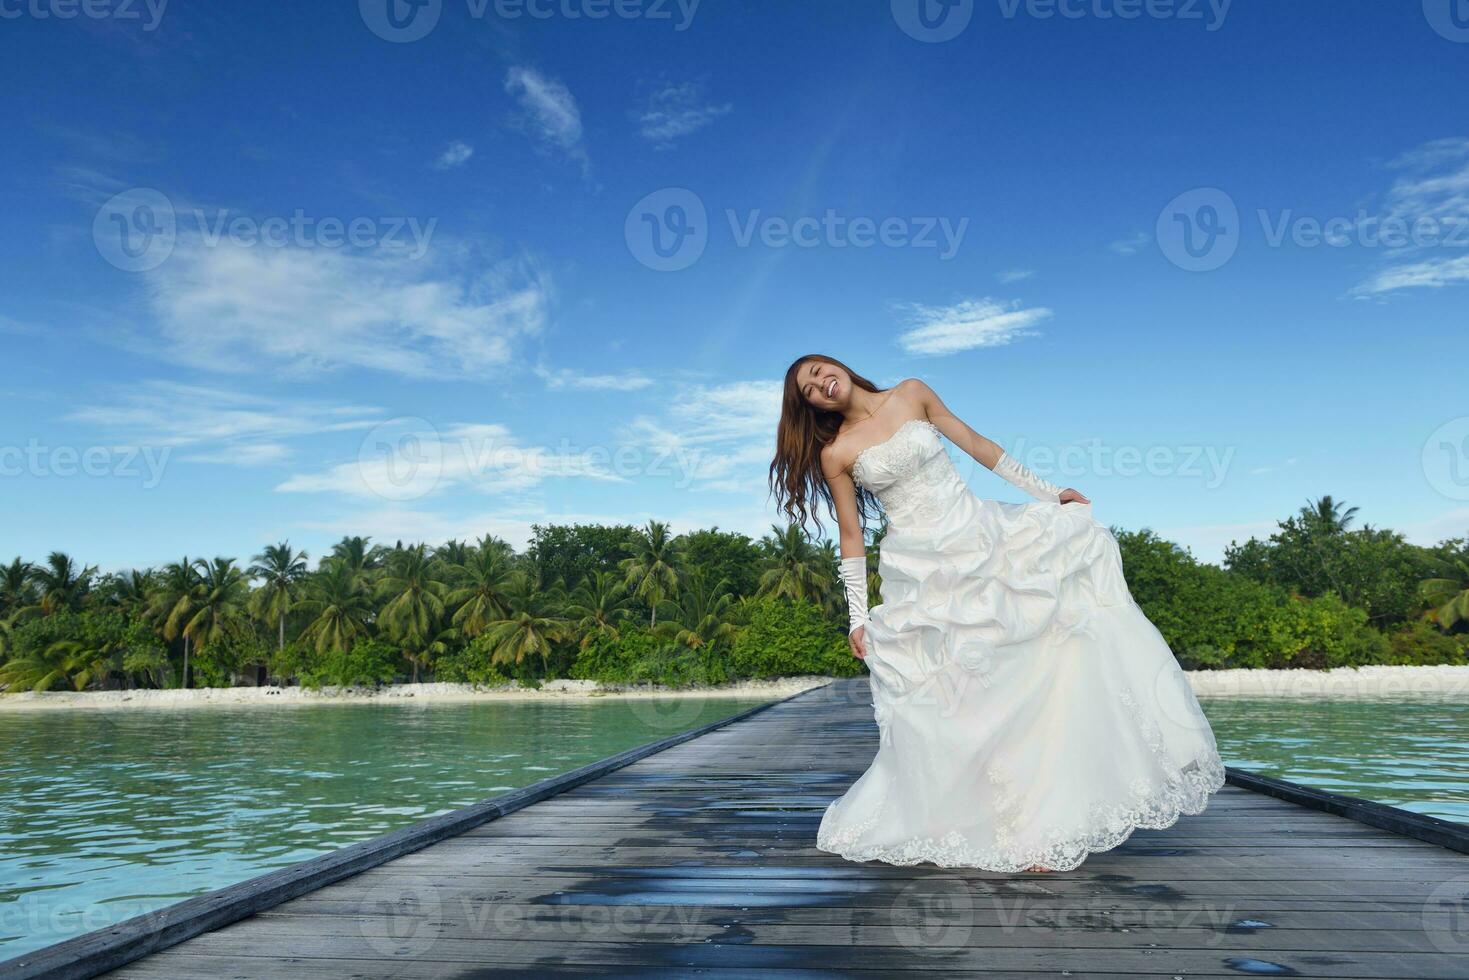 novia asiática en la playa foto